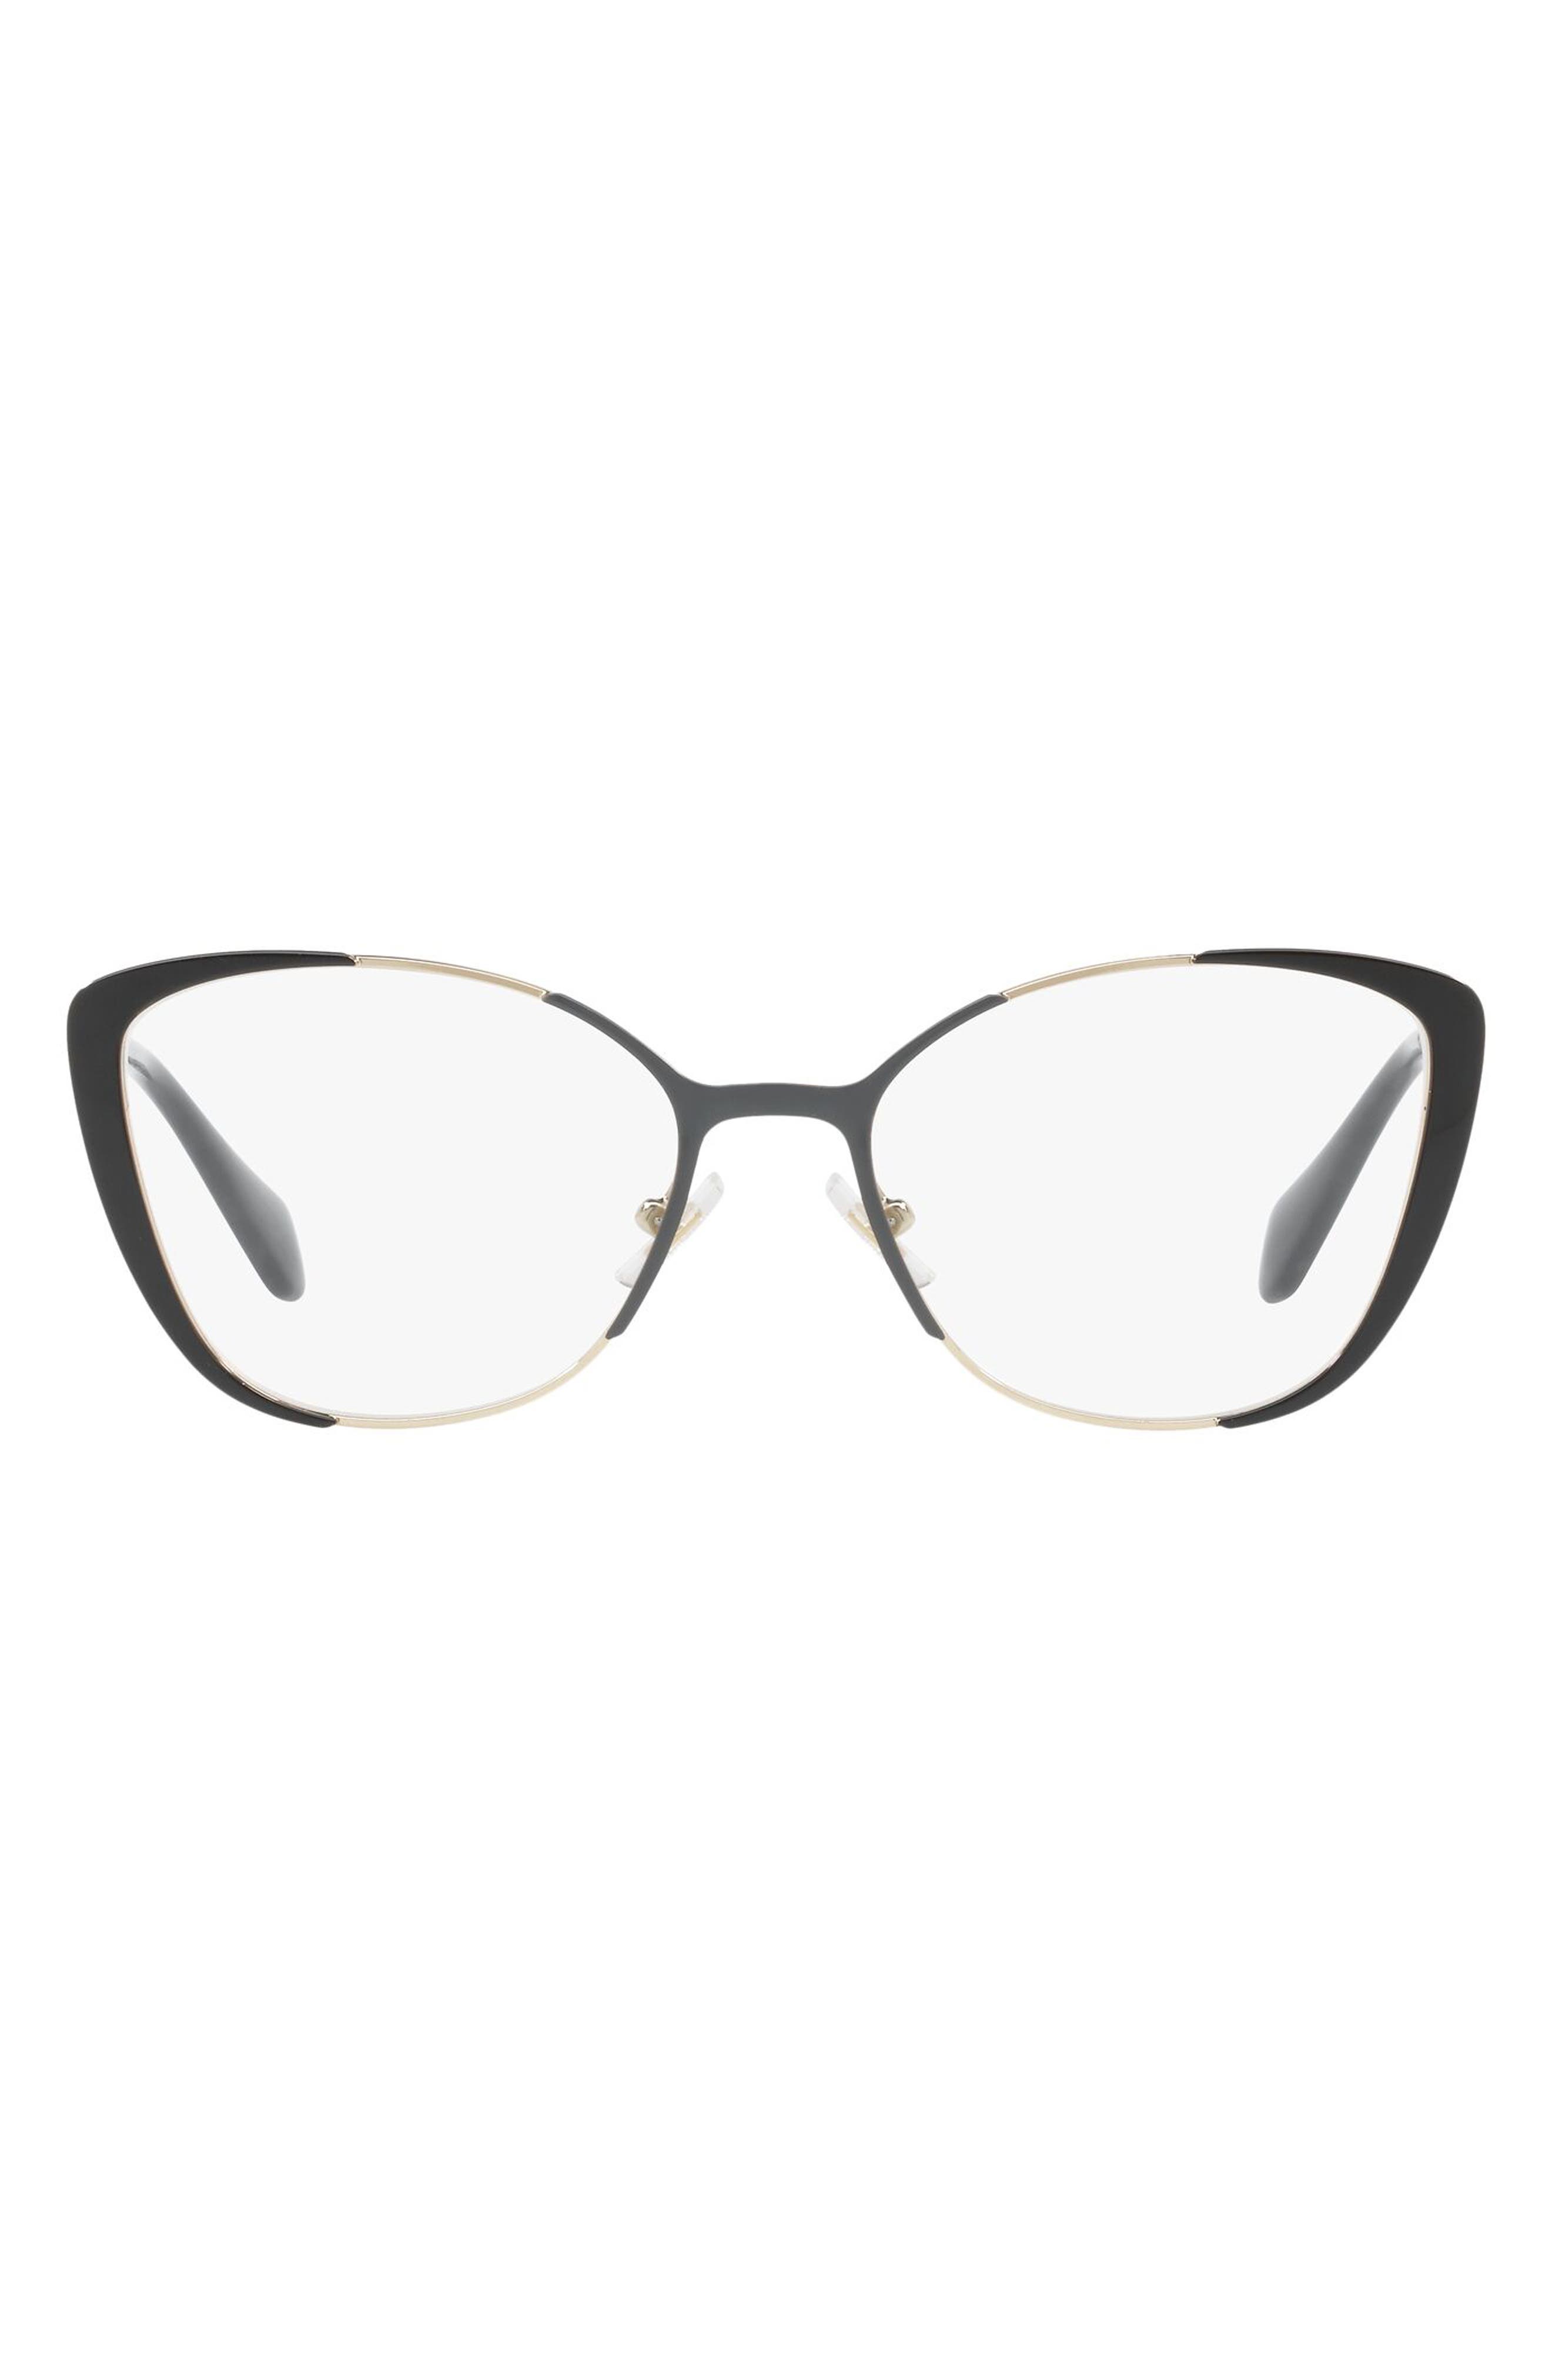 Miu Miu 53mm Cat Eye Optical Glasses in Gold Grey at Nordstrom